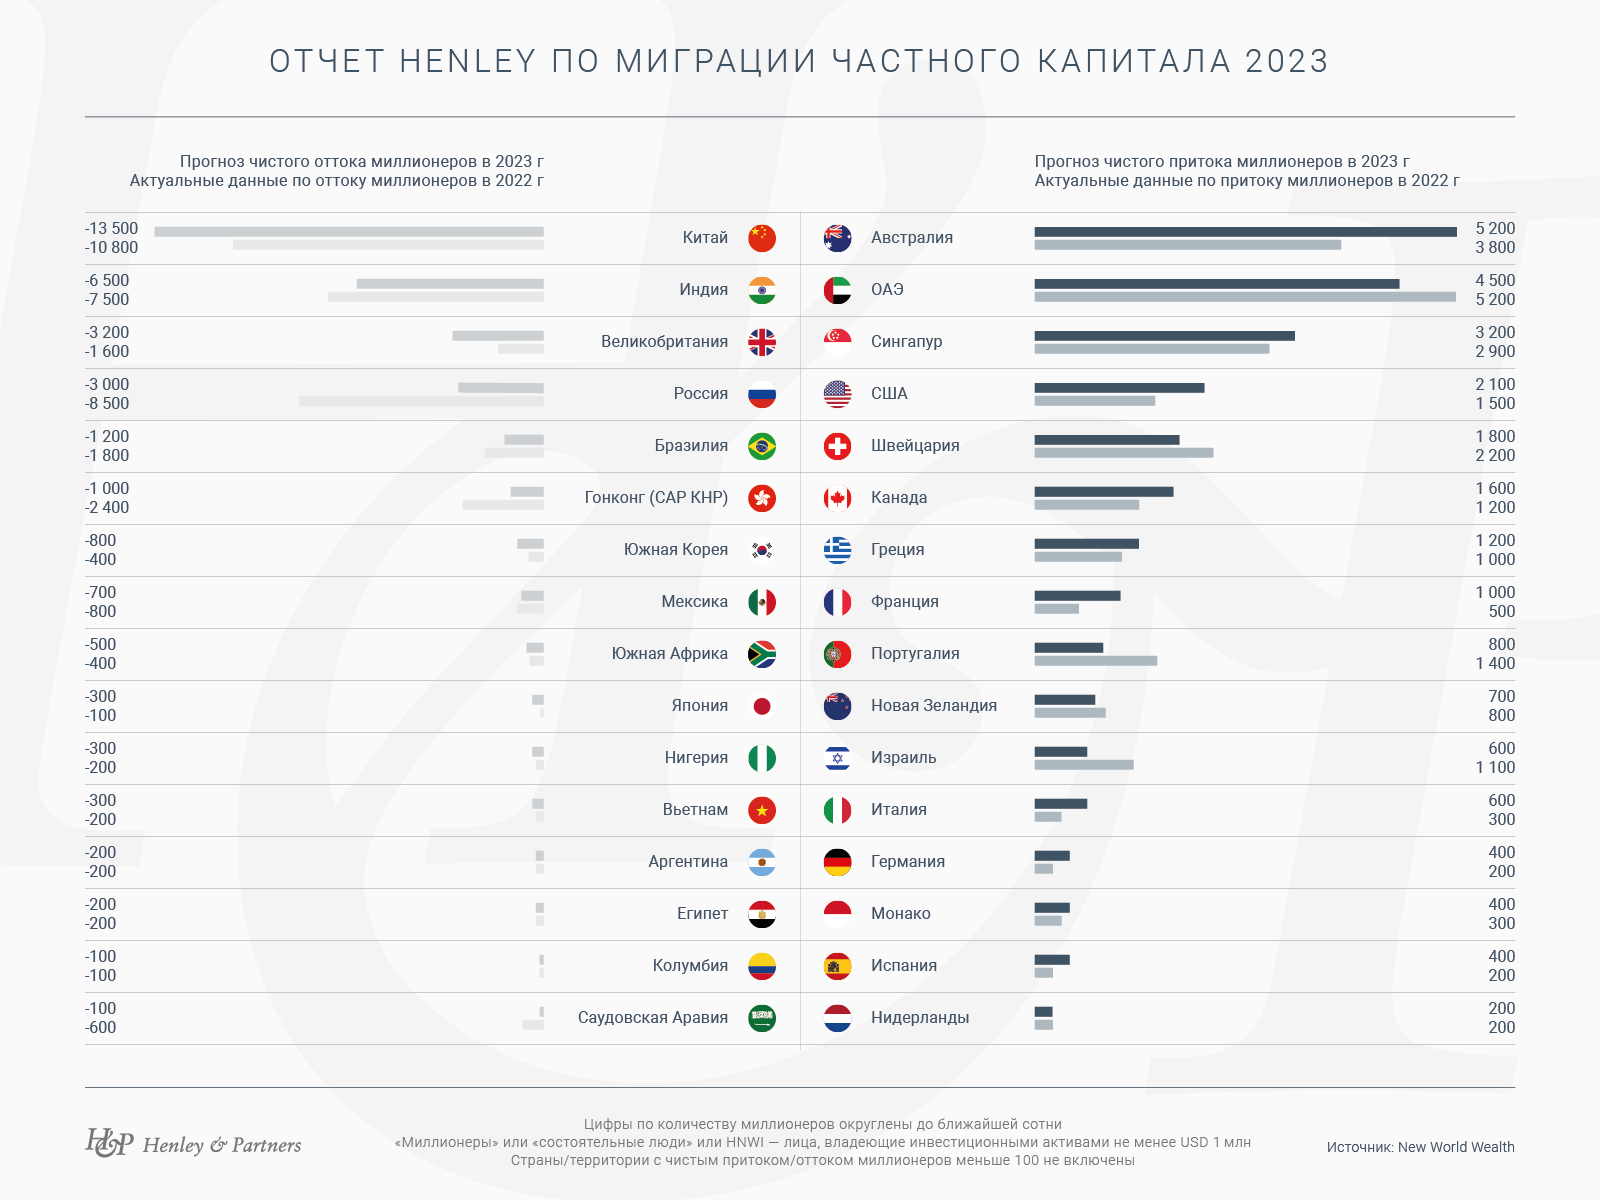 Отчет о миграции частного капитала Henley & Pаrtners по итогам 2022 года